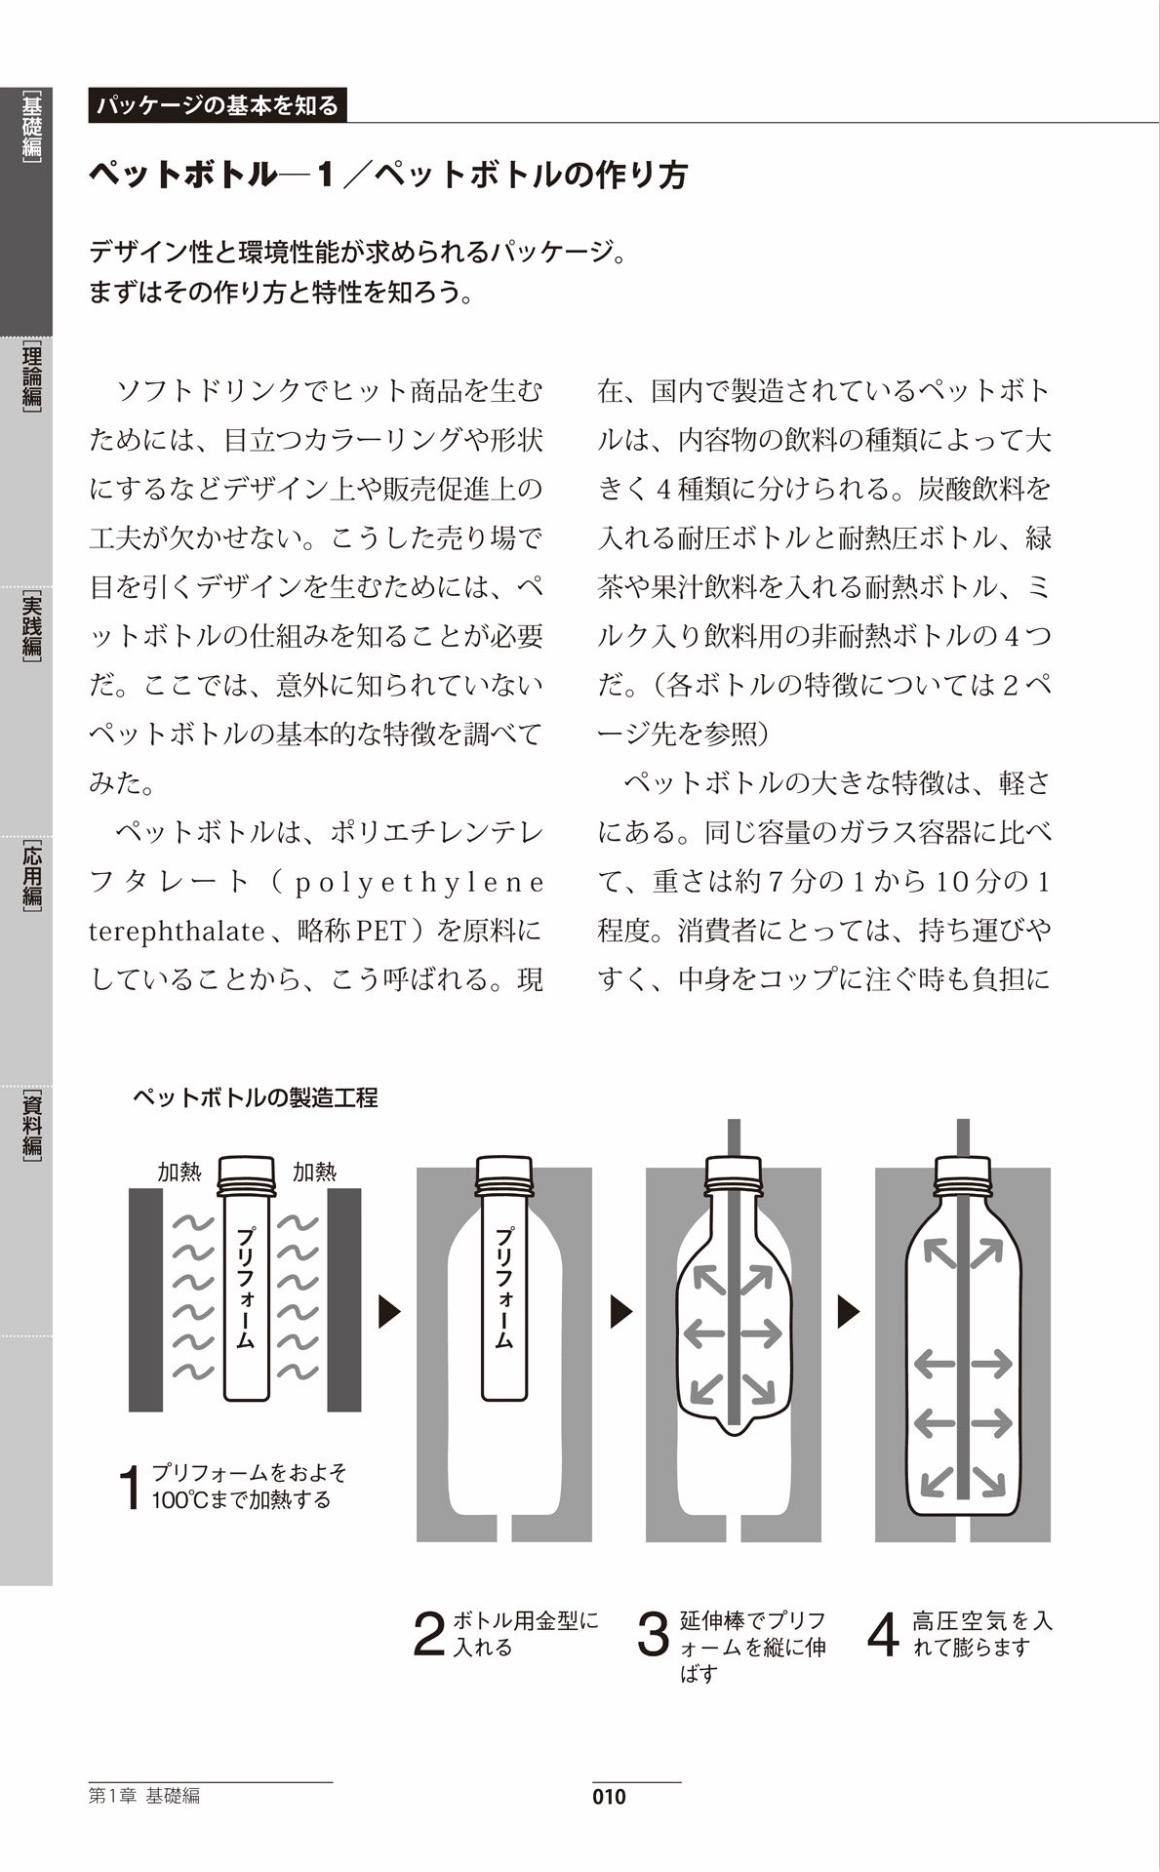 パッケージデザインの教科書 第3版